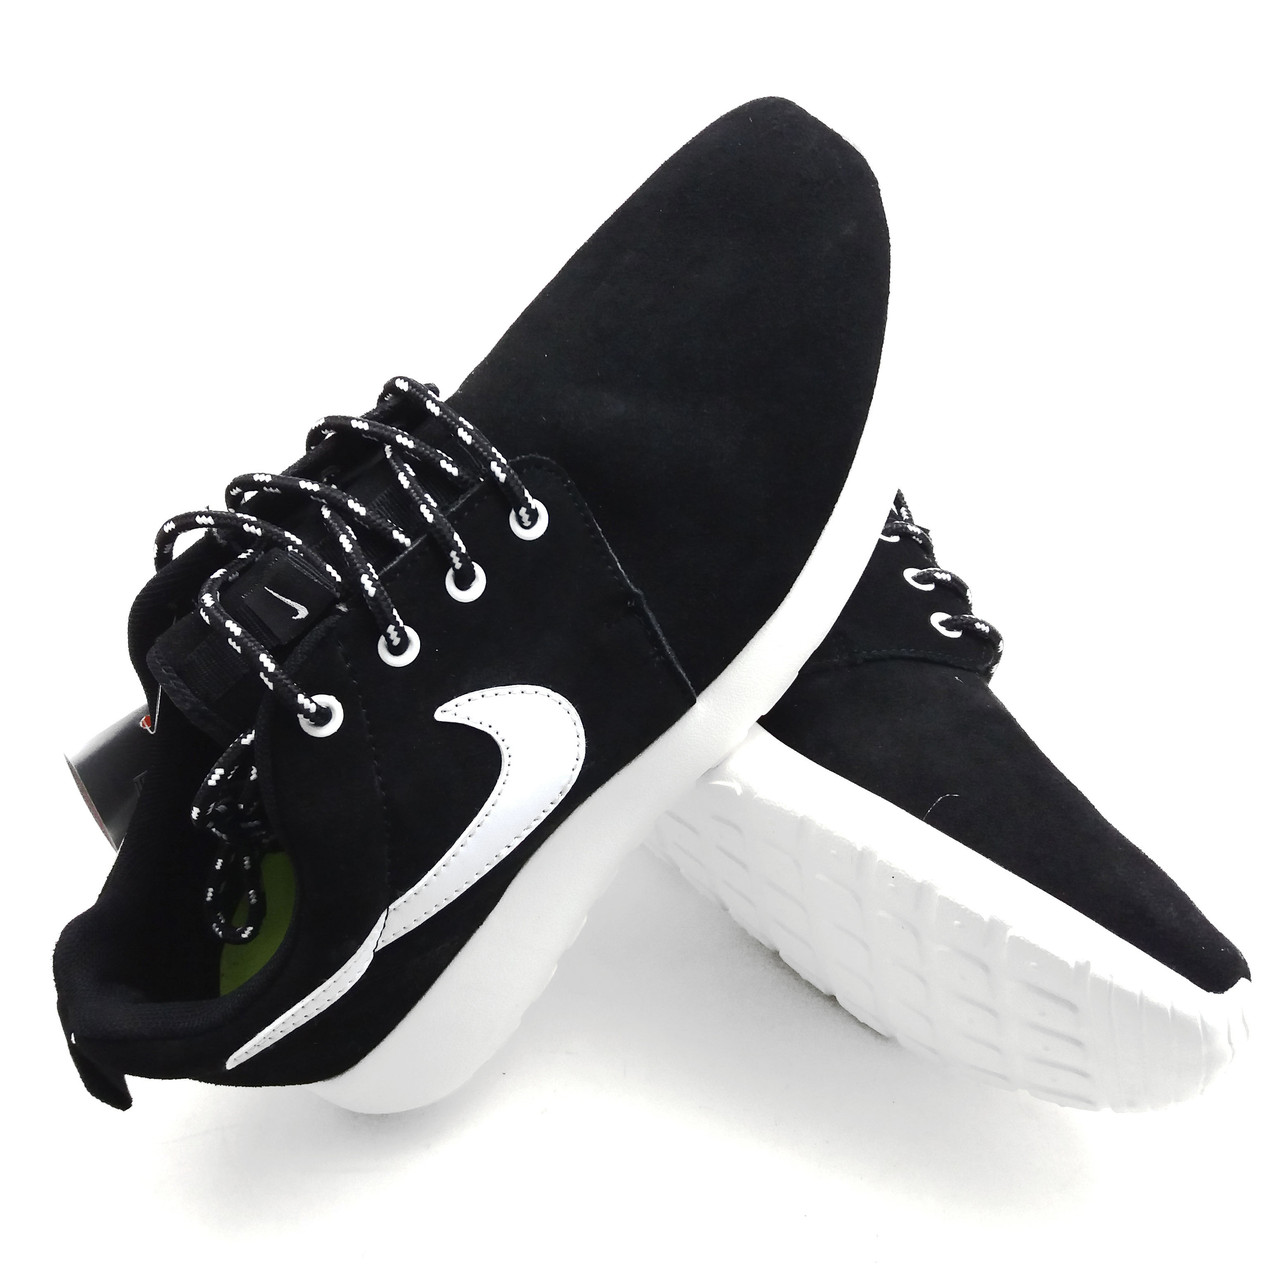 Кросівки Nike Roshe Run замшеві чорні легкі зручні підошва піна